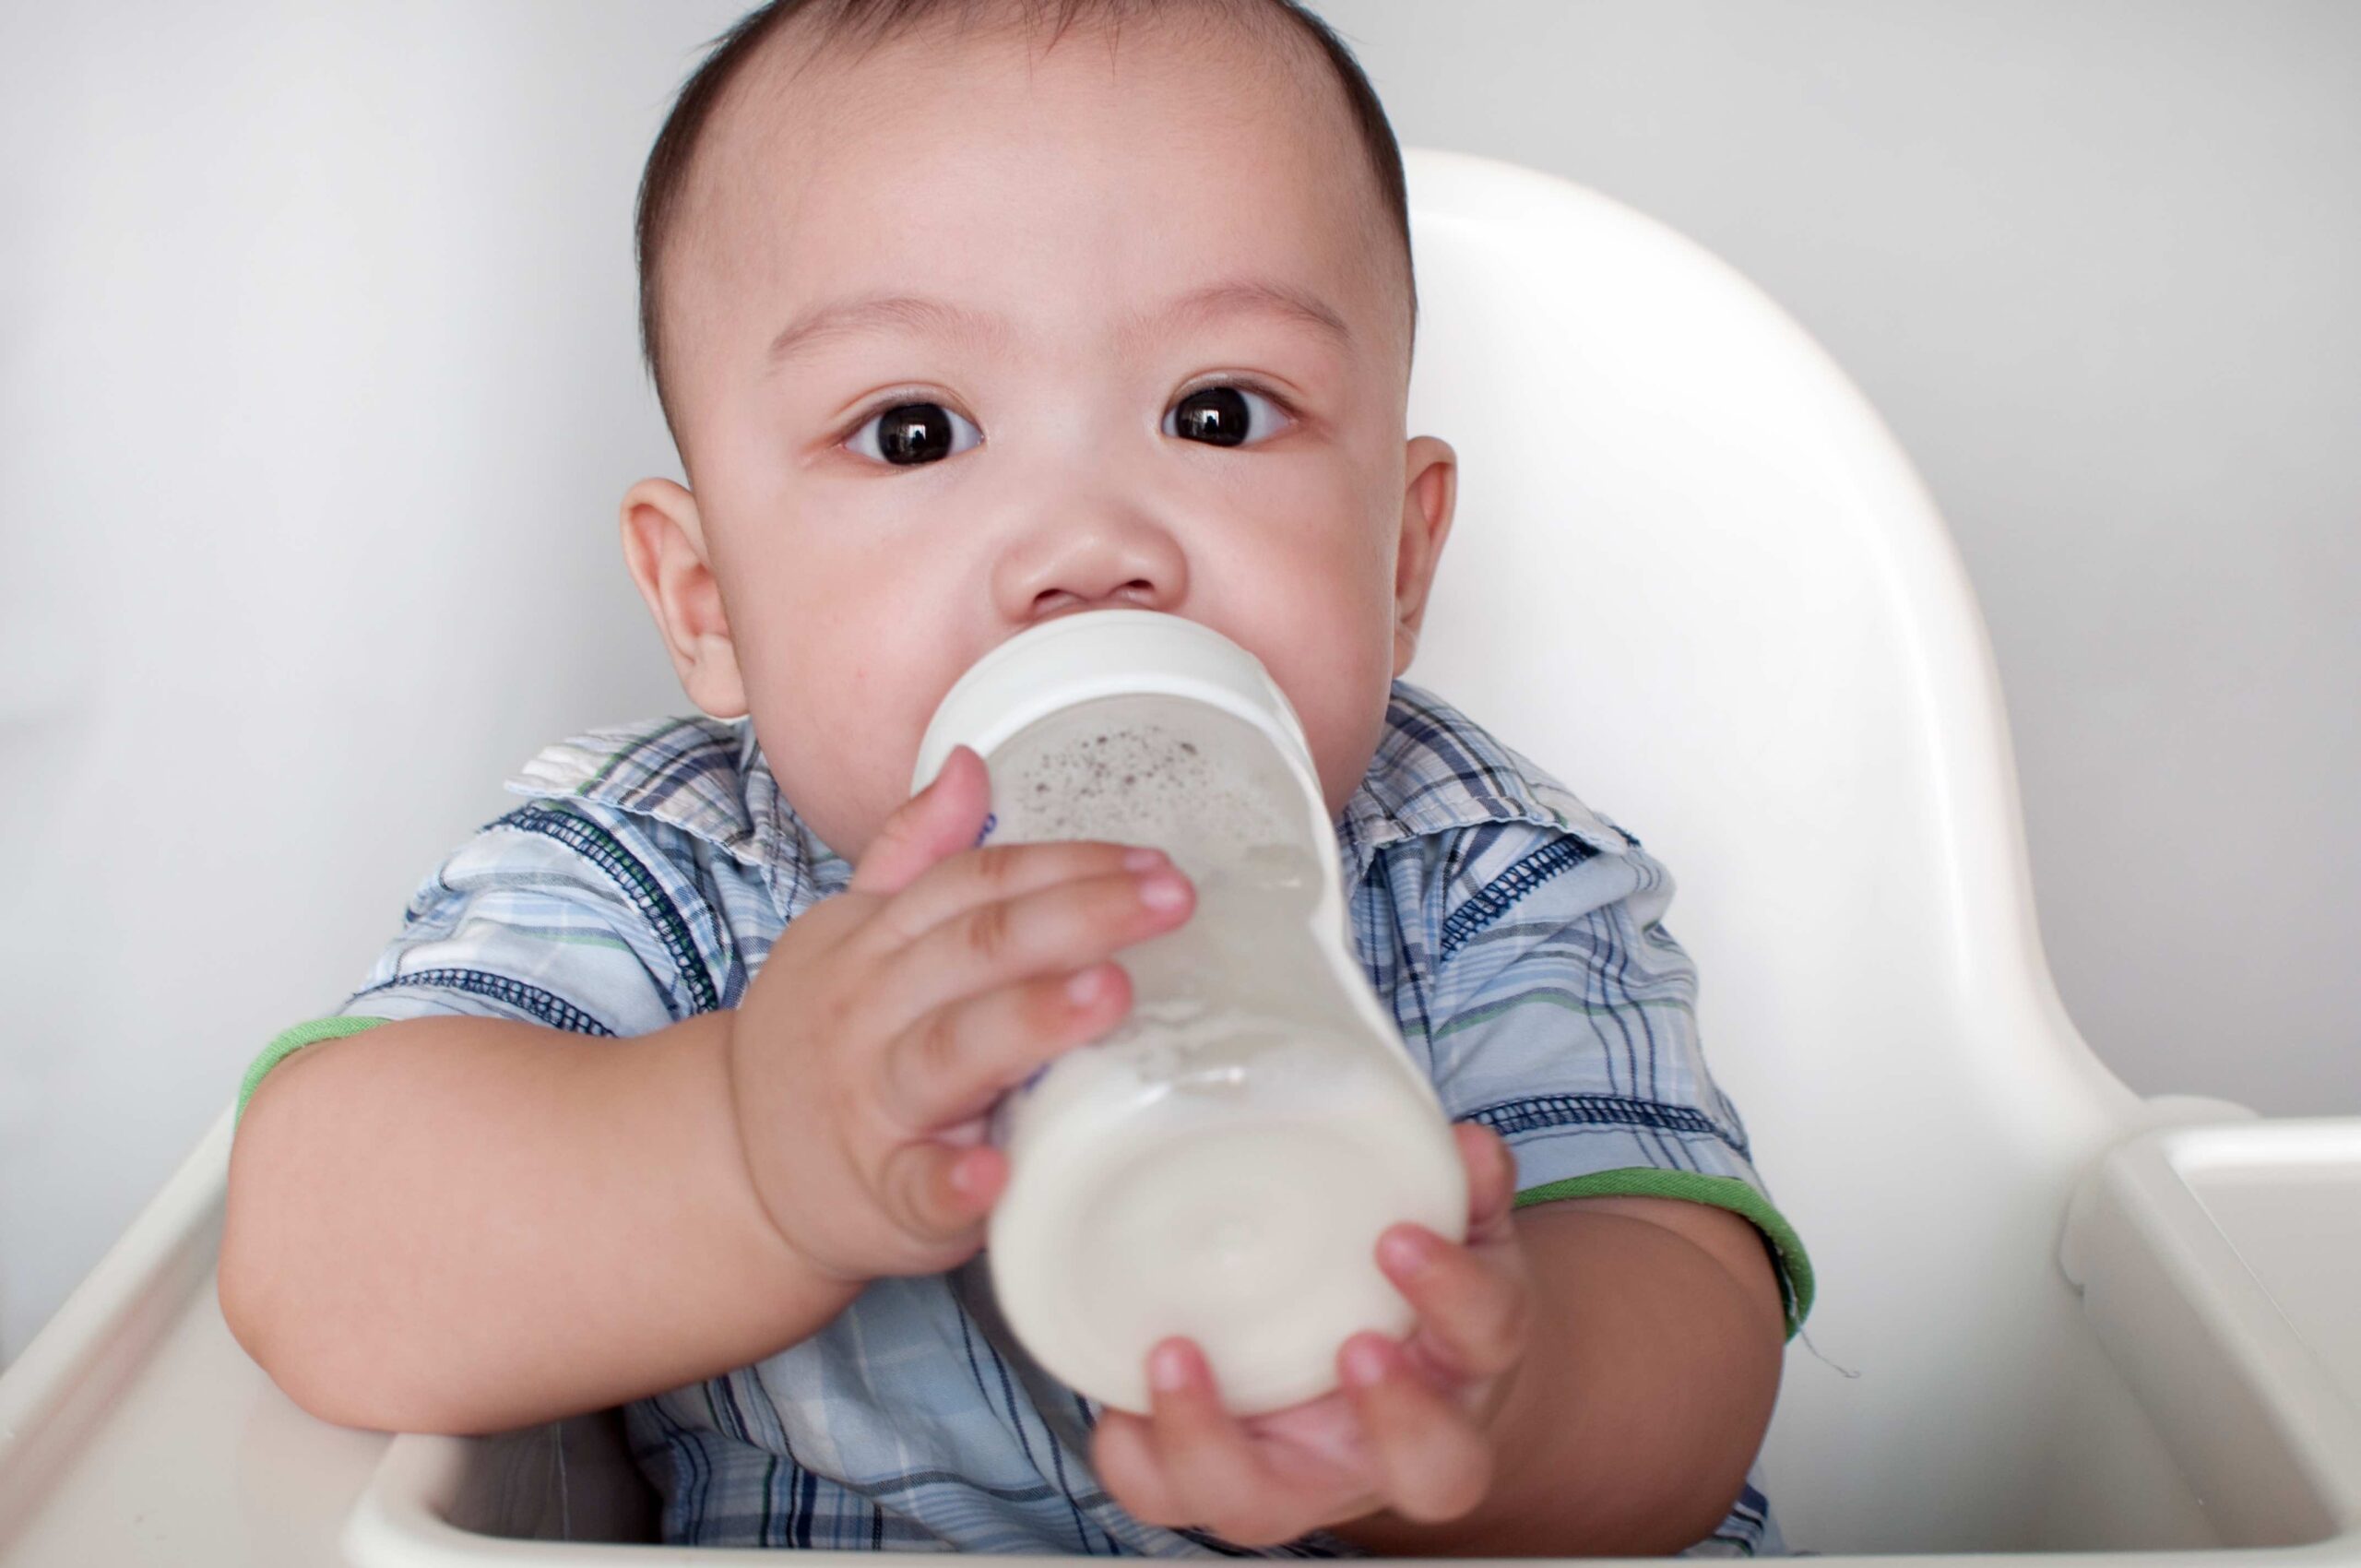 فيزيتا مجانية |هل تصلح المياه المعدنية للرضعات الصناعية؟ ومتي يحتاج الطفل الرضيع لشرب الماء؟